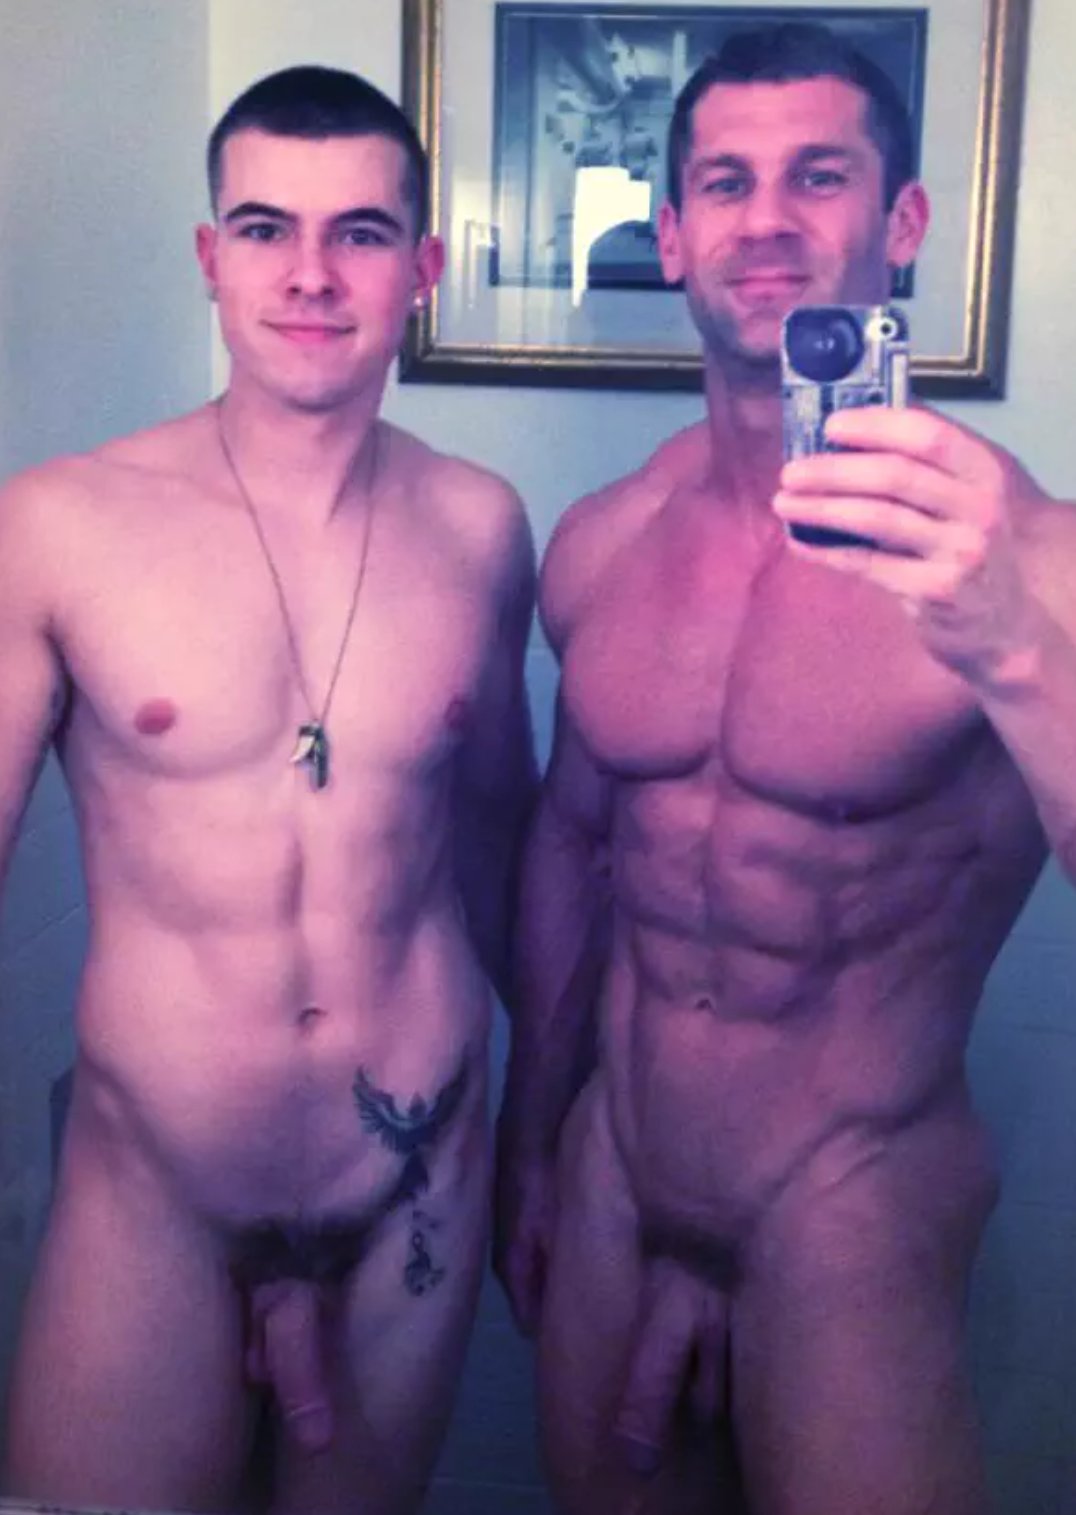 Nudist Men on X: Proud naked Father & Son #selfie for #SelfieSaturday  #NudistLife #NudistLads #NudistMenonly #NoBodyShame #MenBeingMen #NudistMen  t.coPkJODZSrAy  X